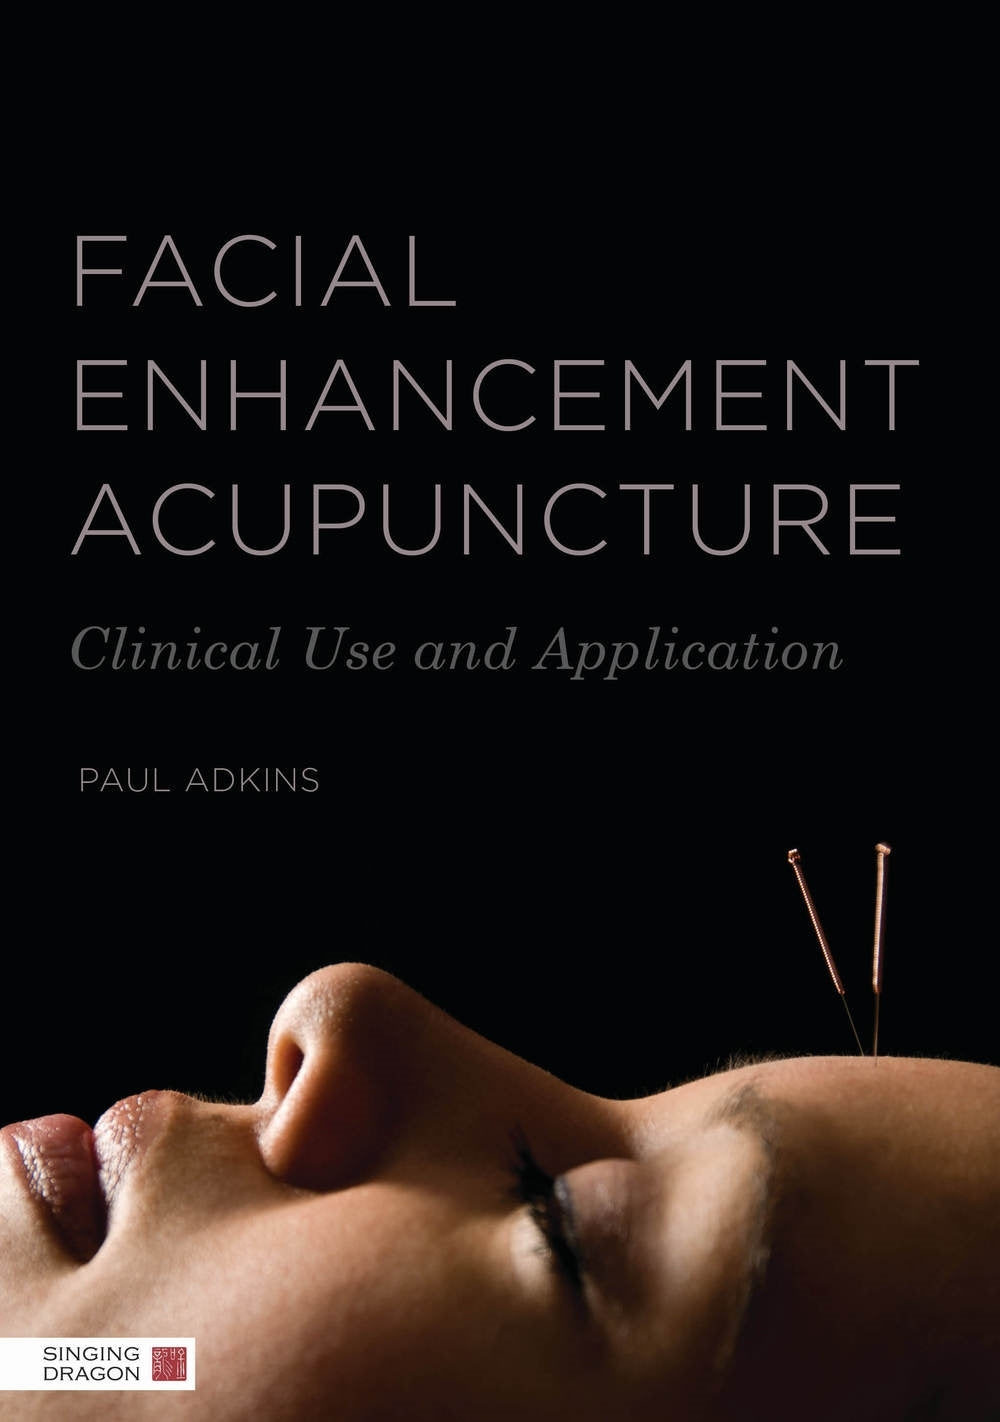 Facial Enhancement Acupuncture by Paul Adkins, Roger Dutton